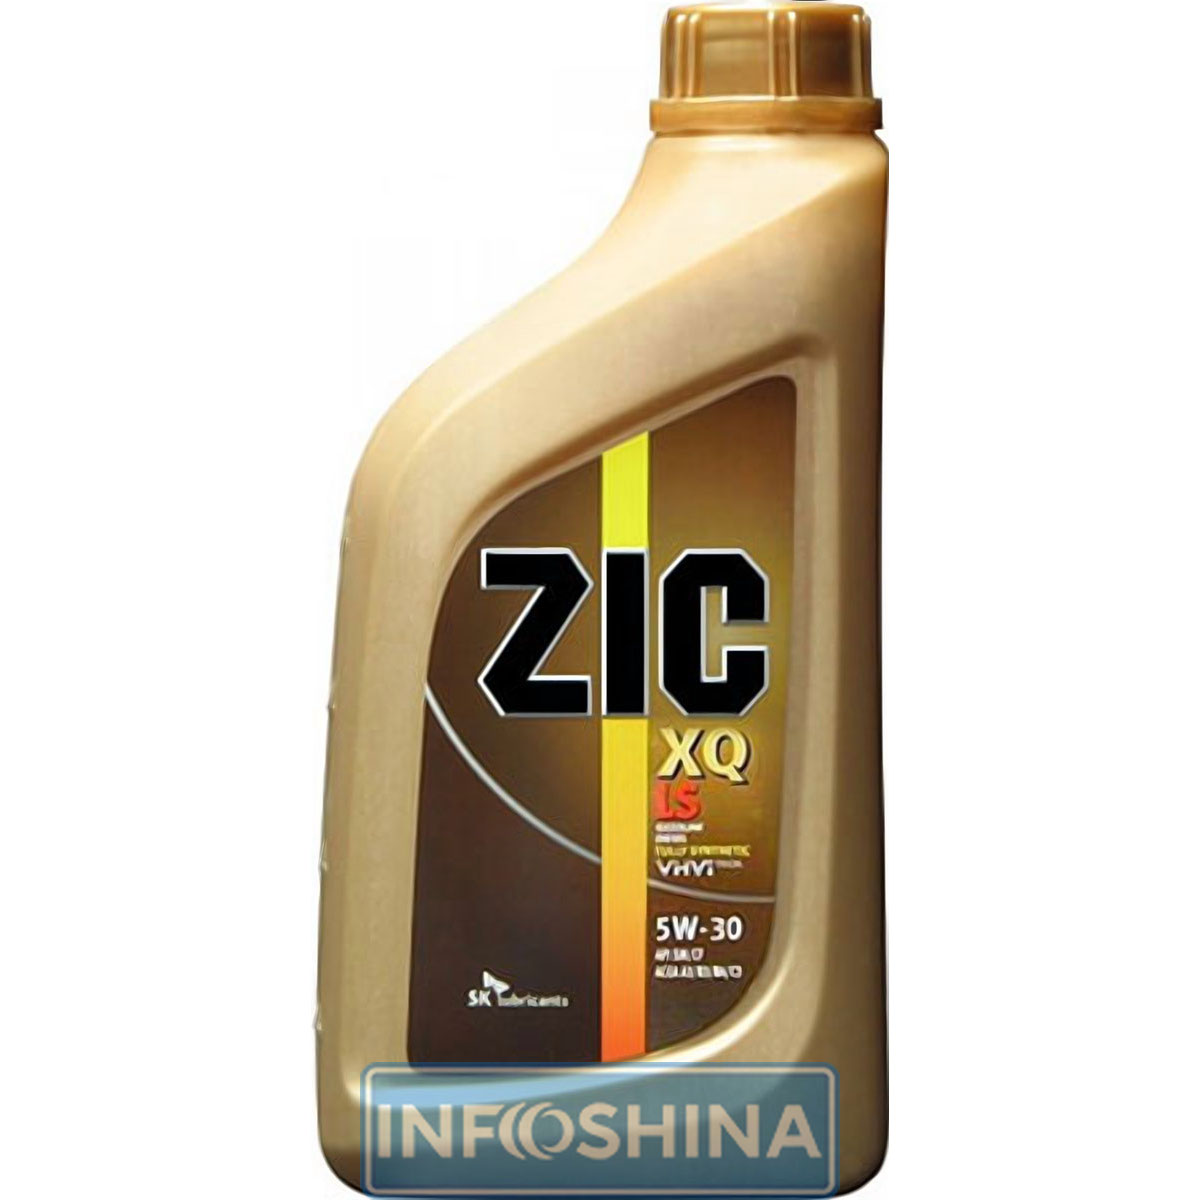 Купить масло Zic XQ LS 5W-30 (1л)